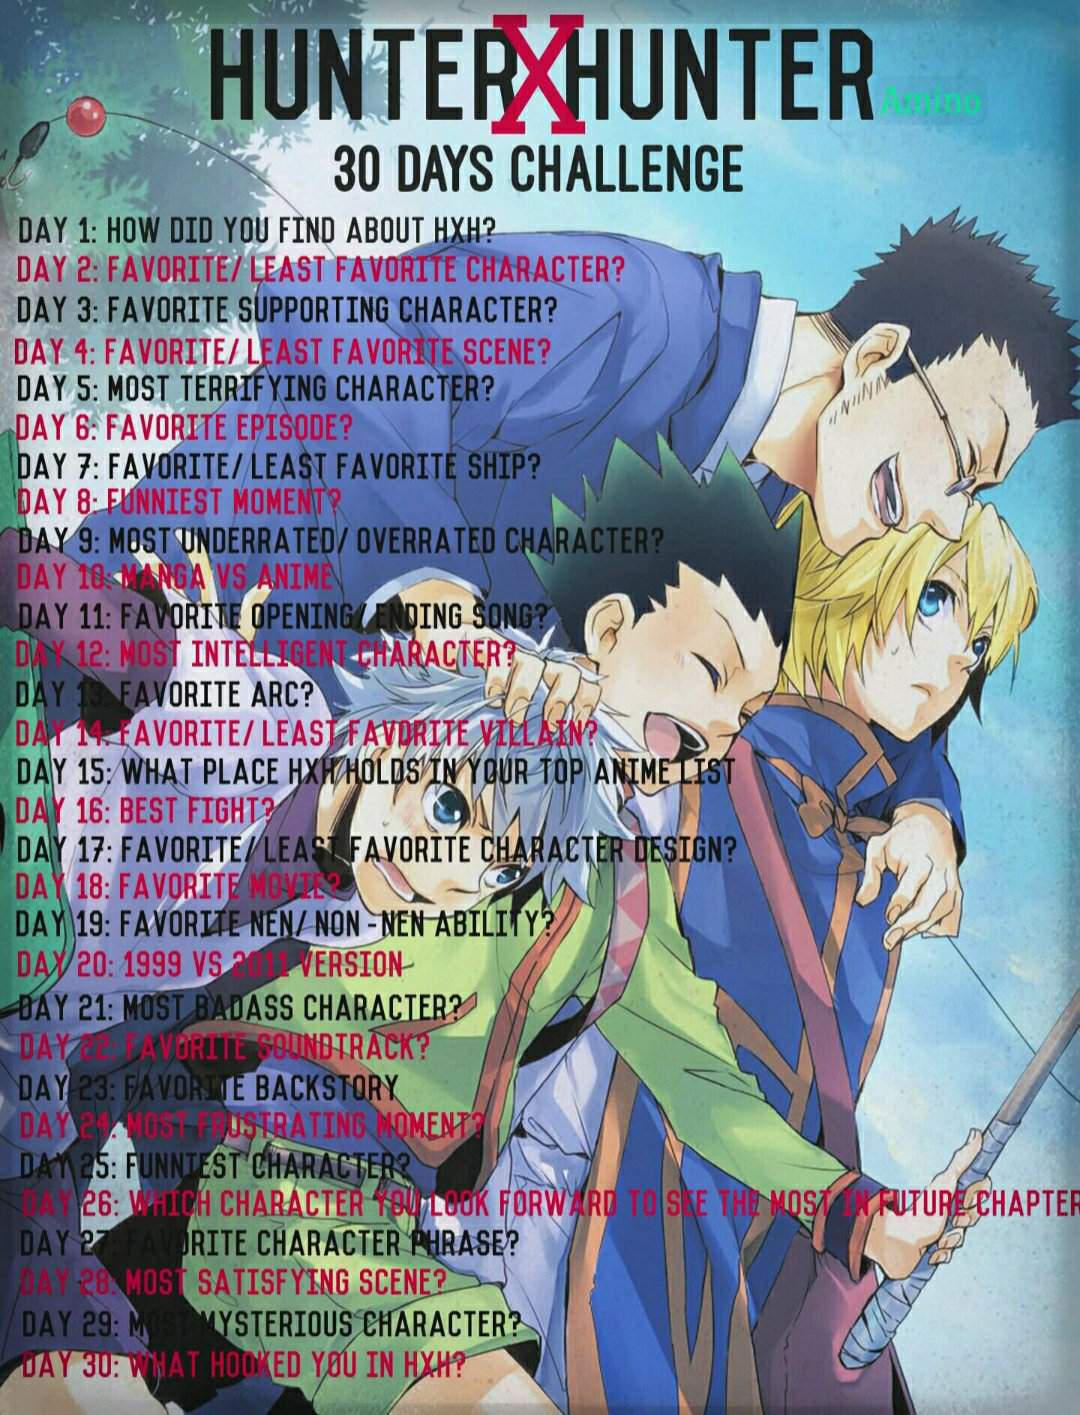 Hxh 30 Days Challenge Day 28 Most Satisfying Scene Hunter X Hunter Amino